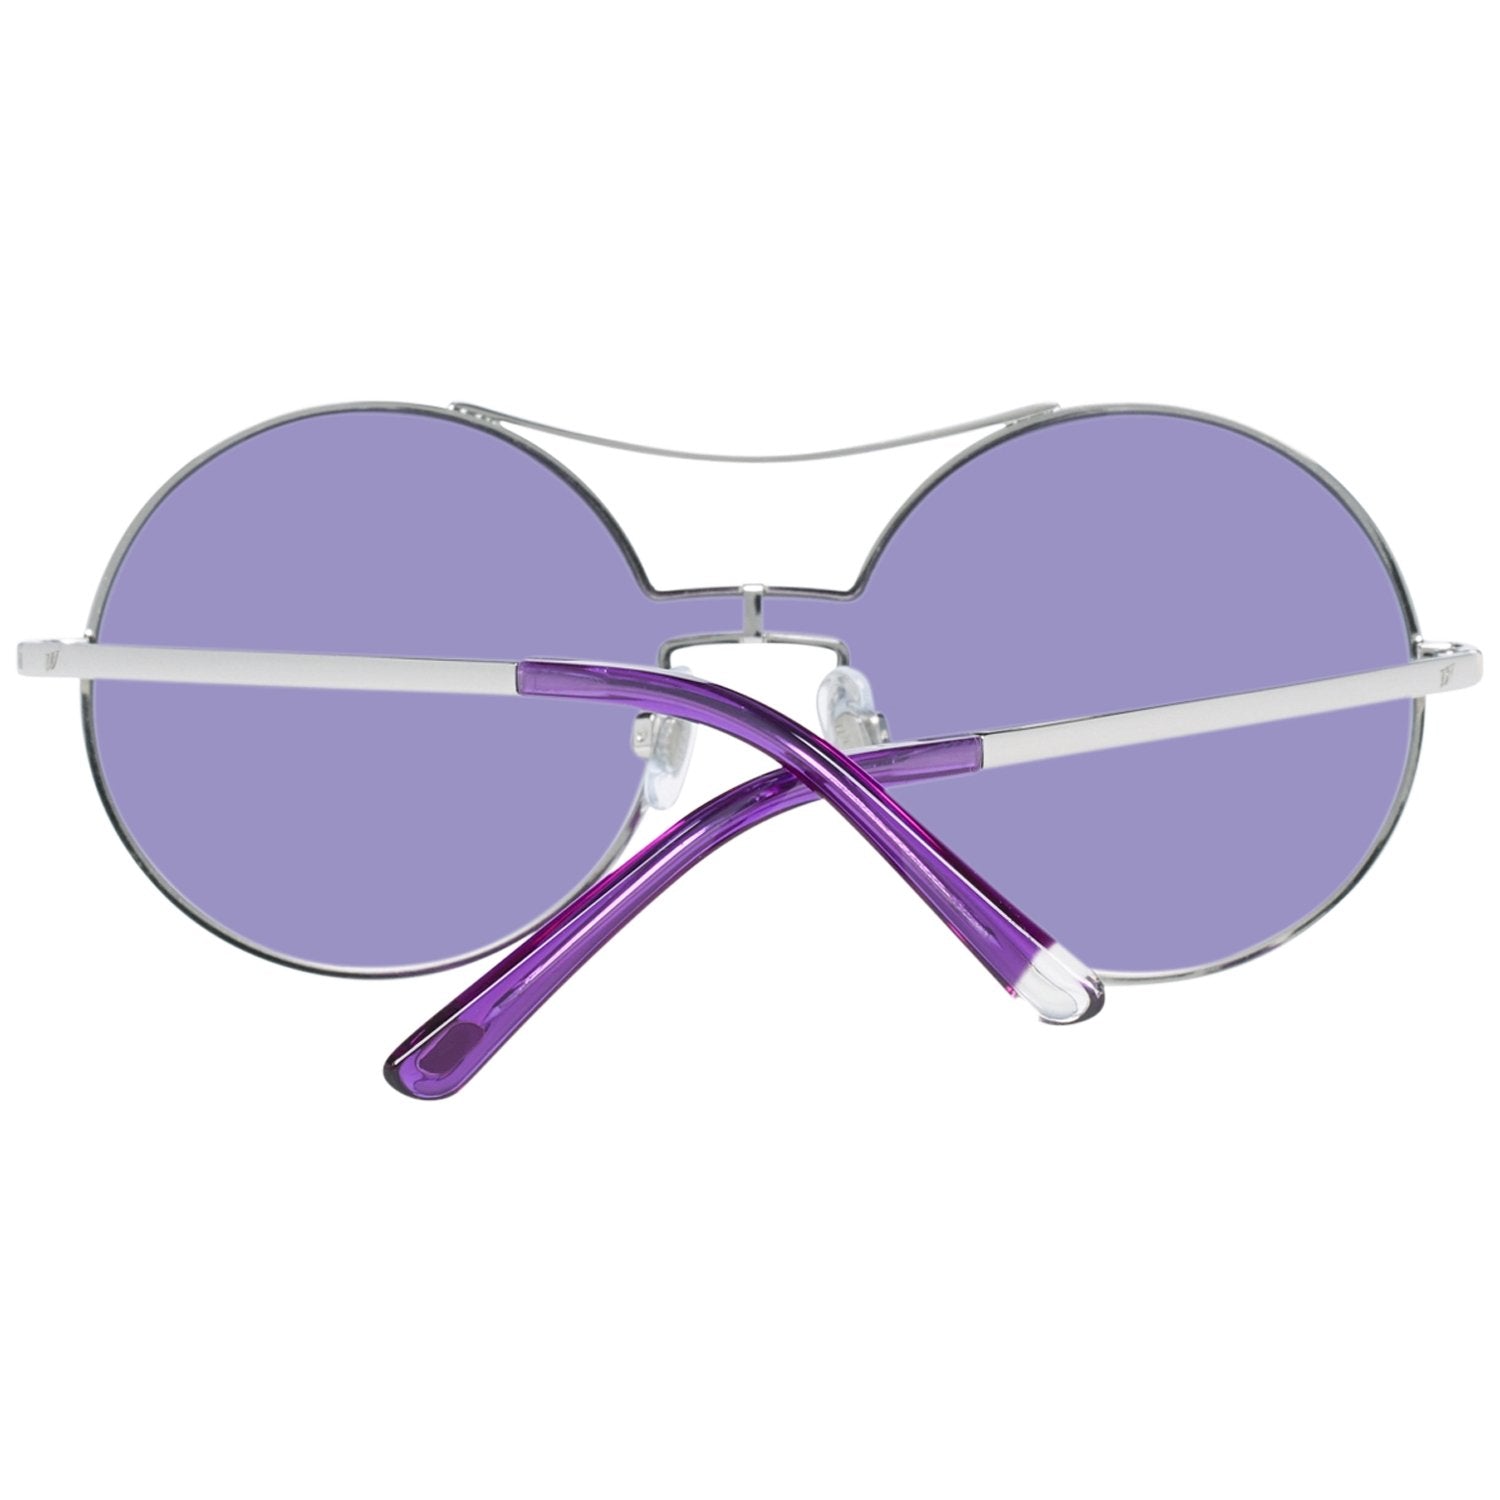 Web Silver Sunglasses for Woman - Fizigo